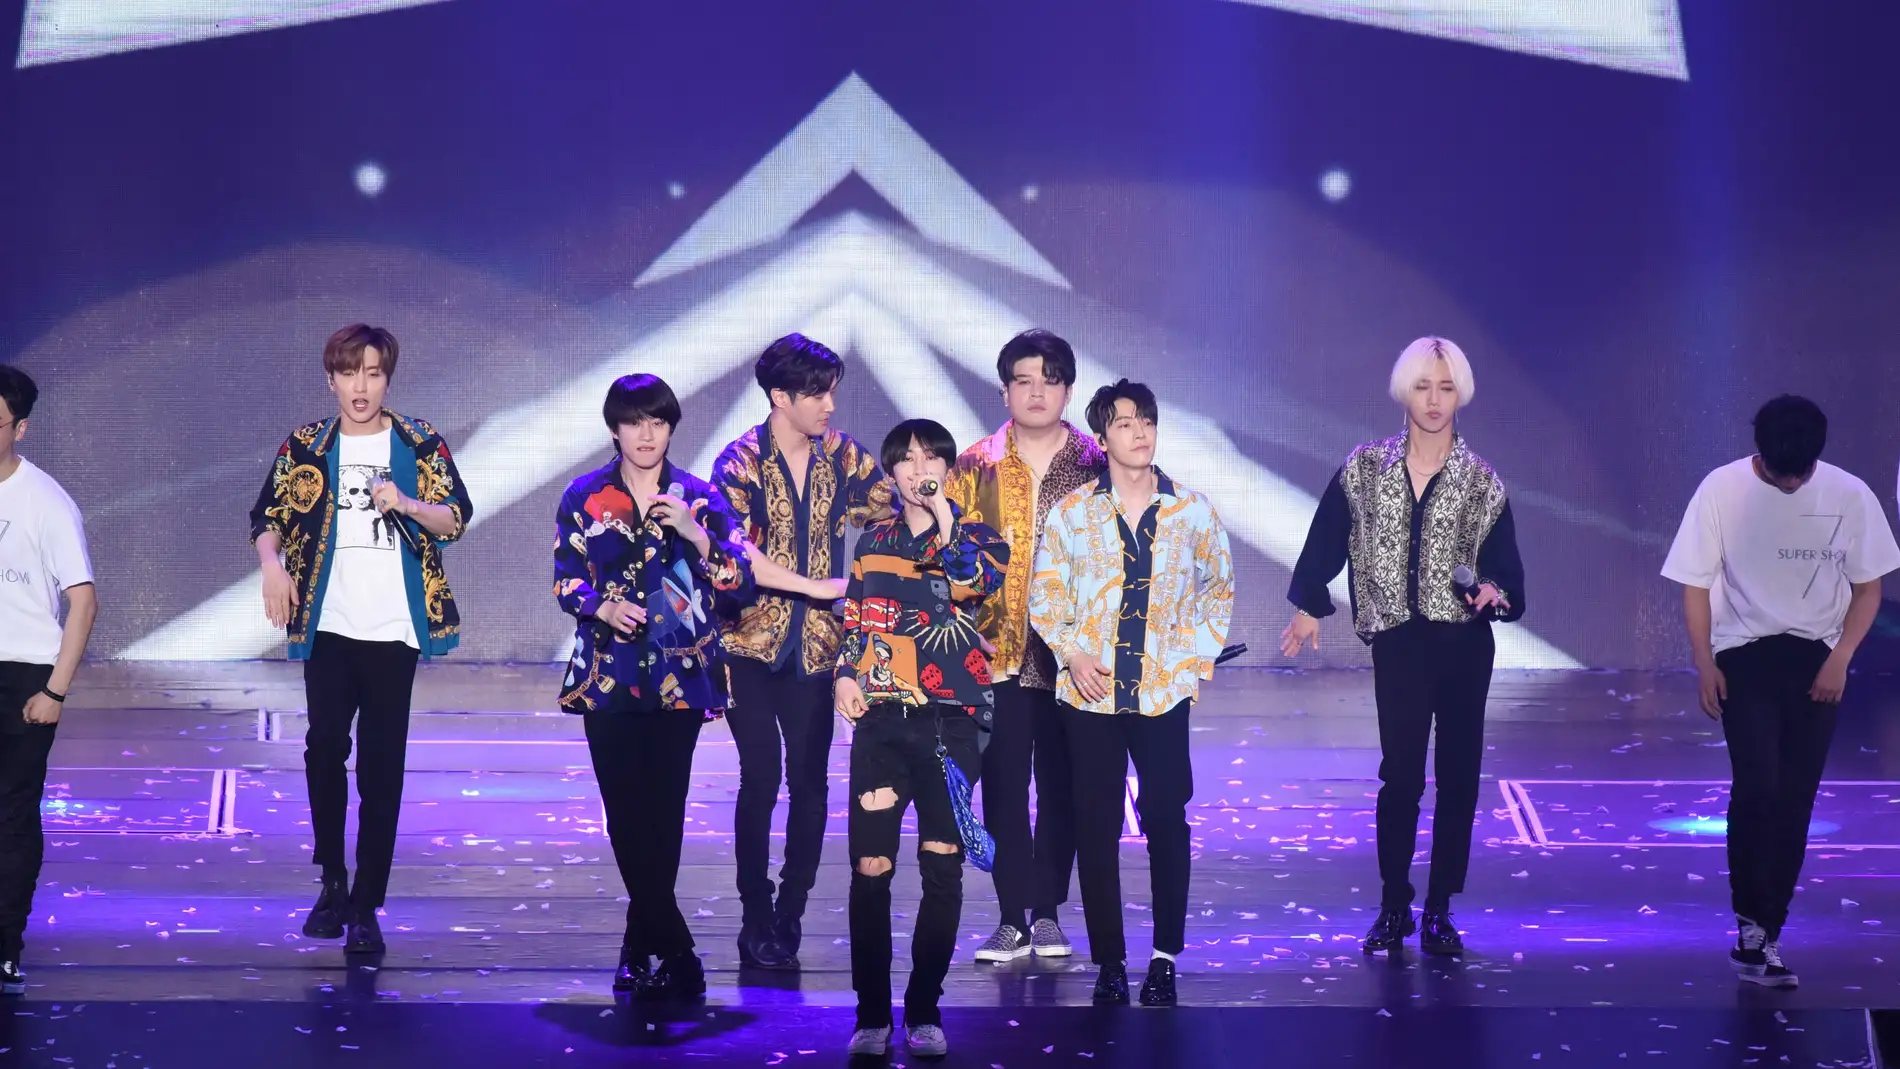 Super Junior en el concierto "SUPER SHOW 7" de Taiwán